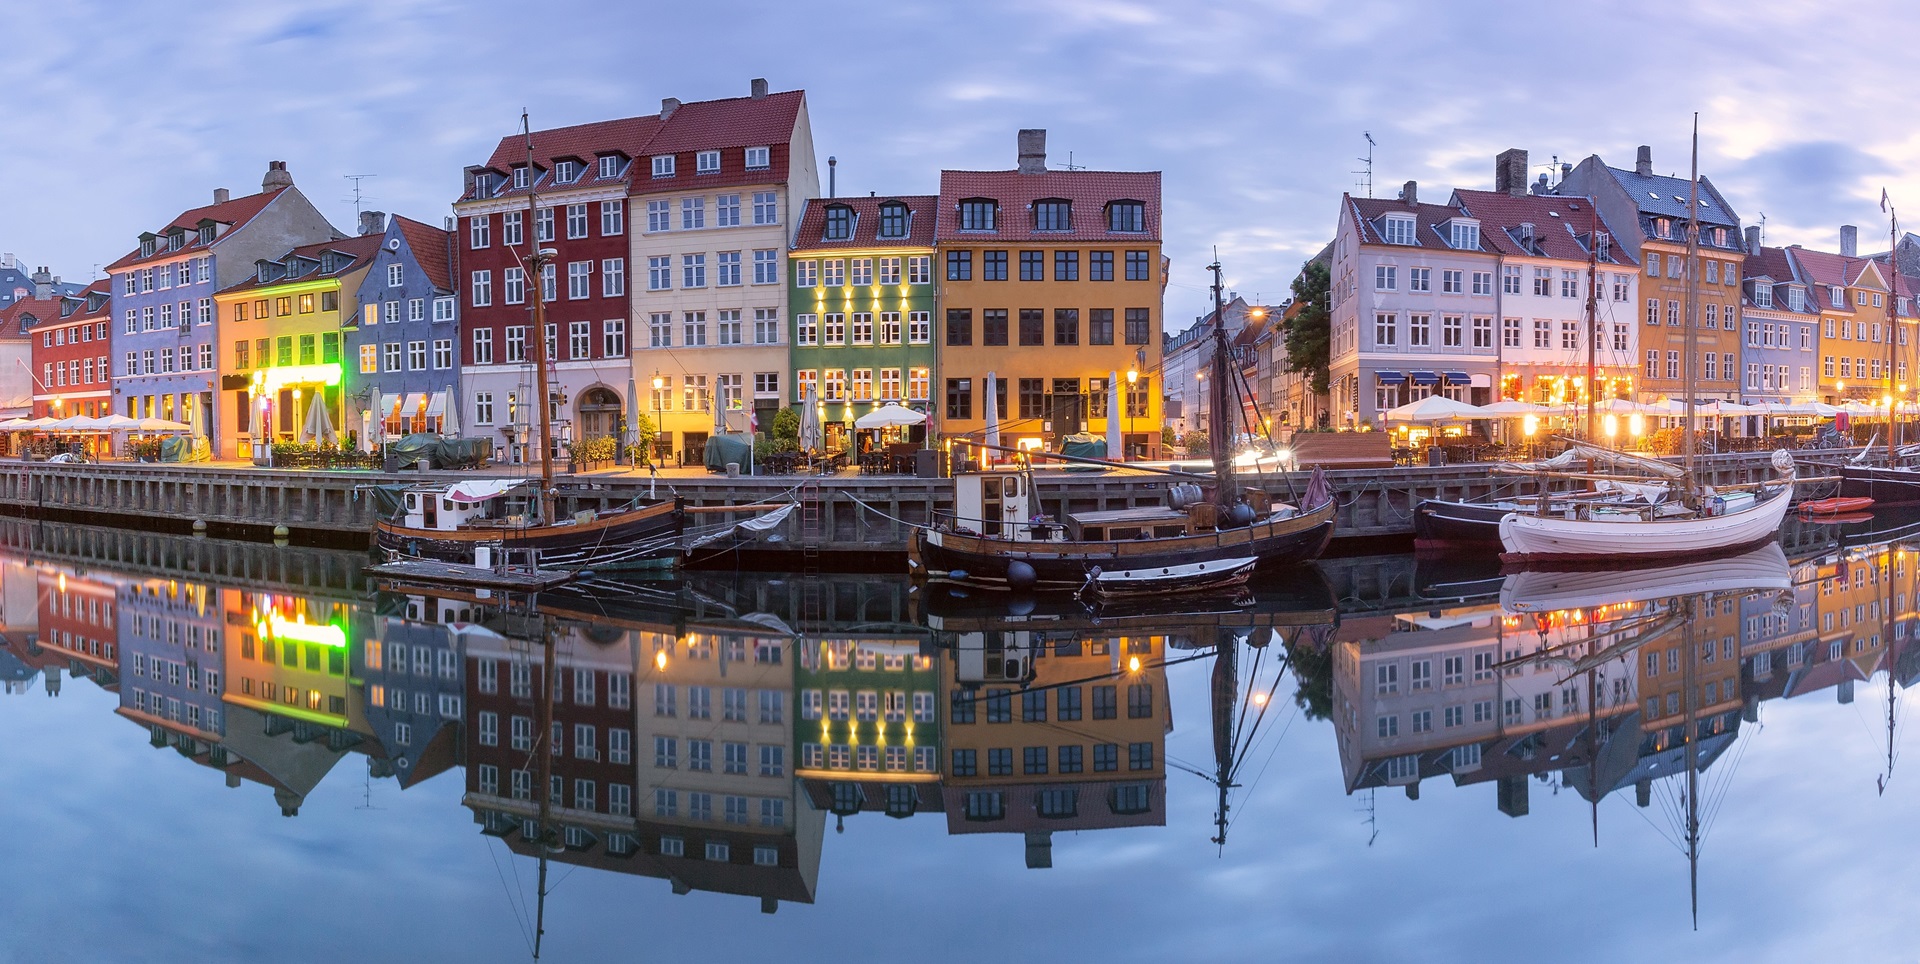 El turismo sostenible tiene recompensa en Copenhague - La Viña